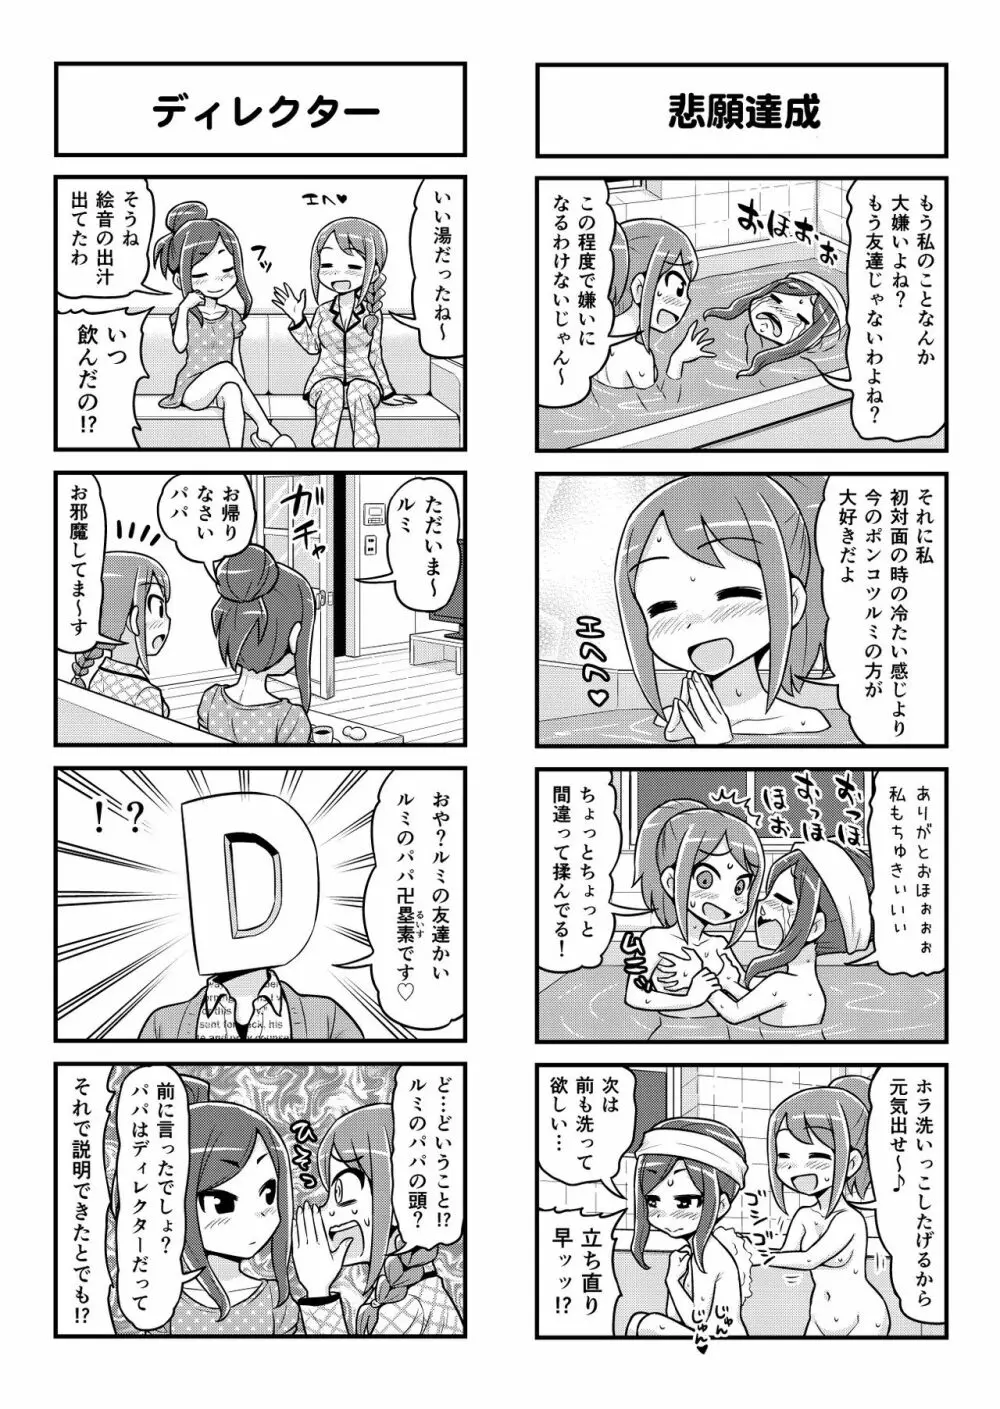 のんきBOY 1-48 - page400